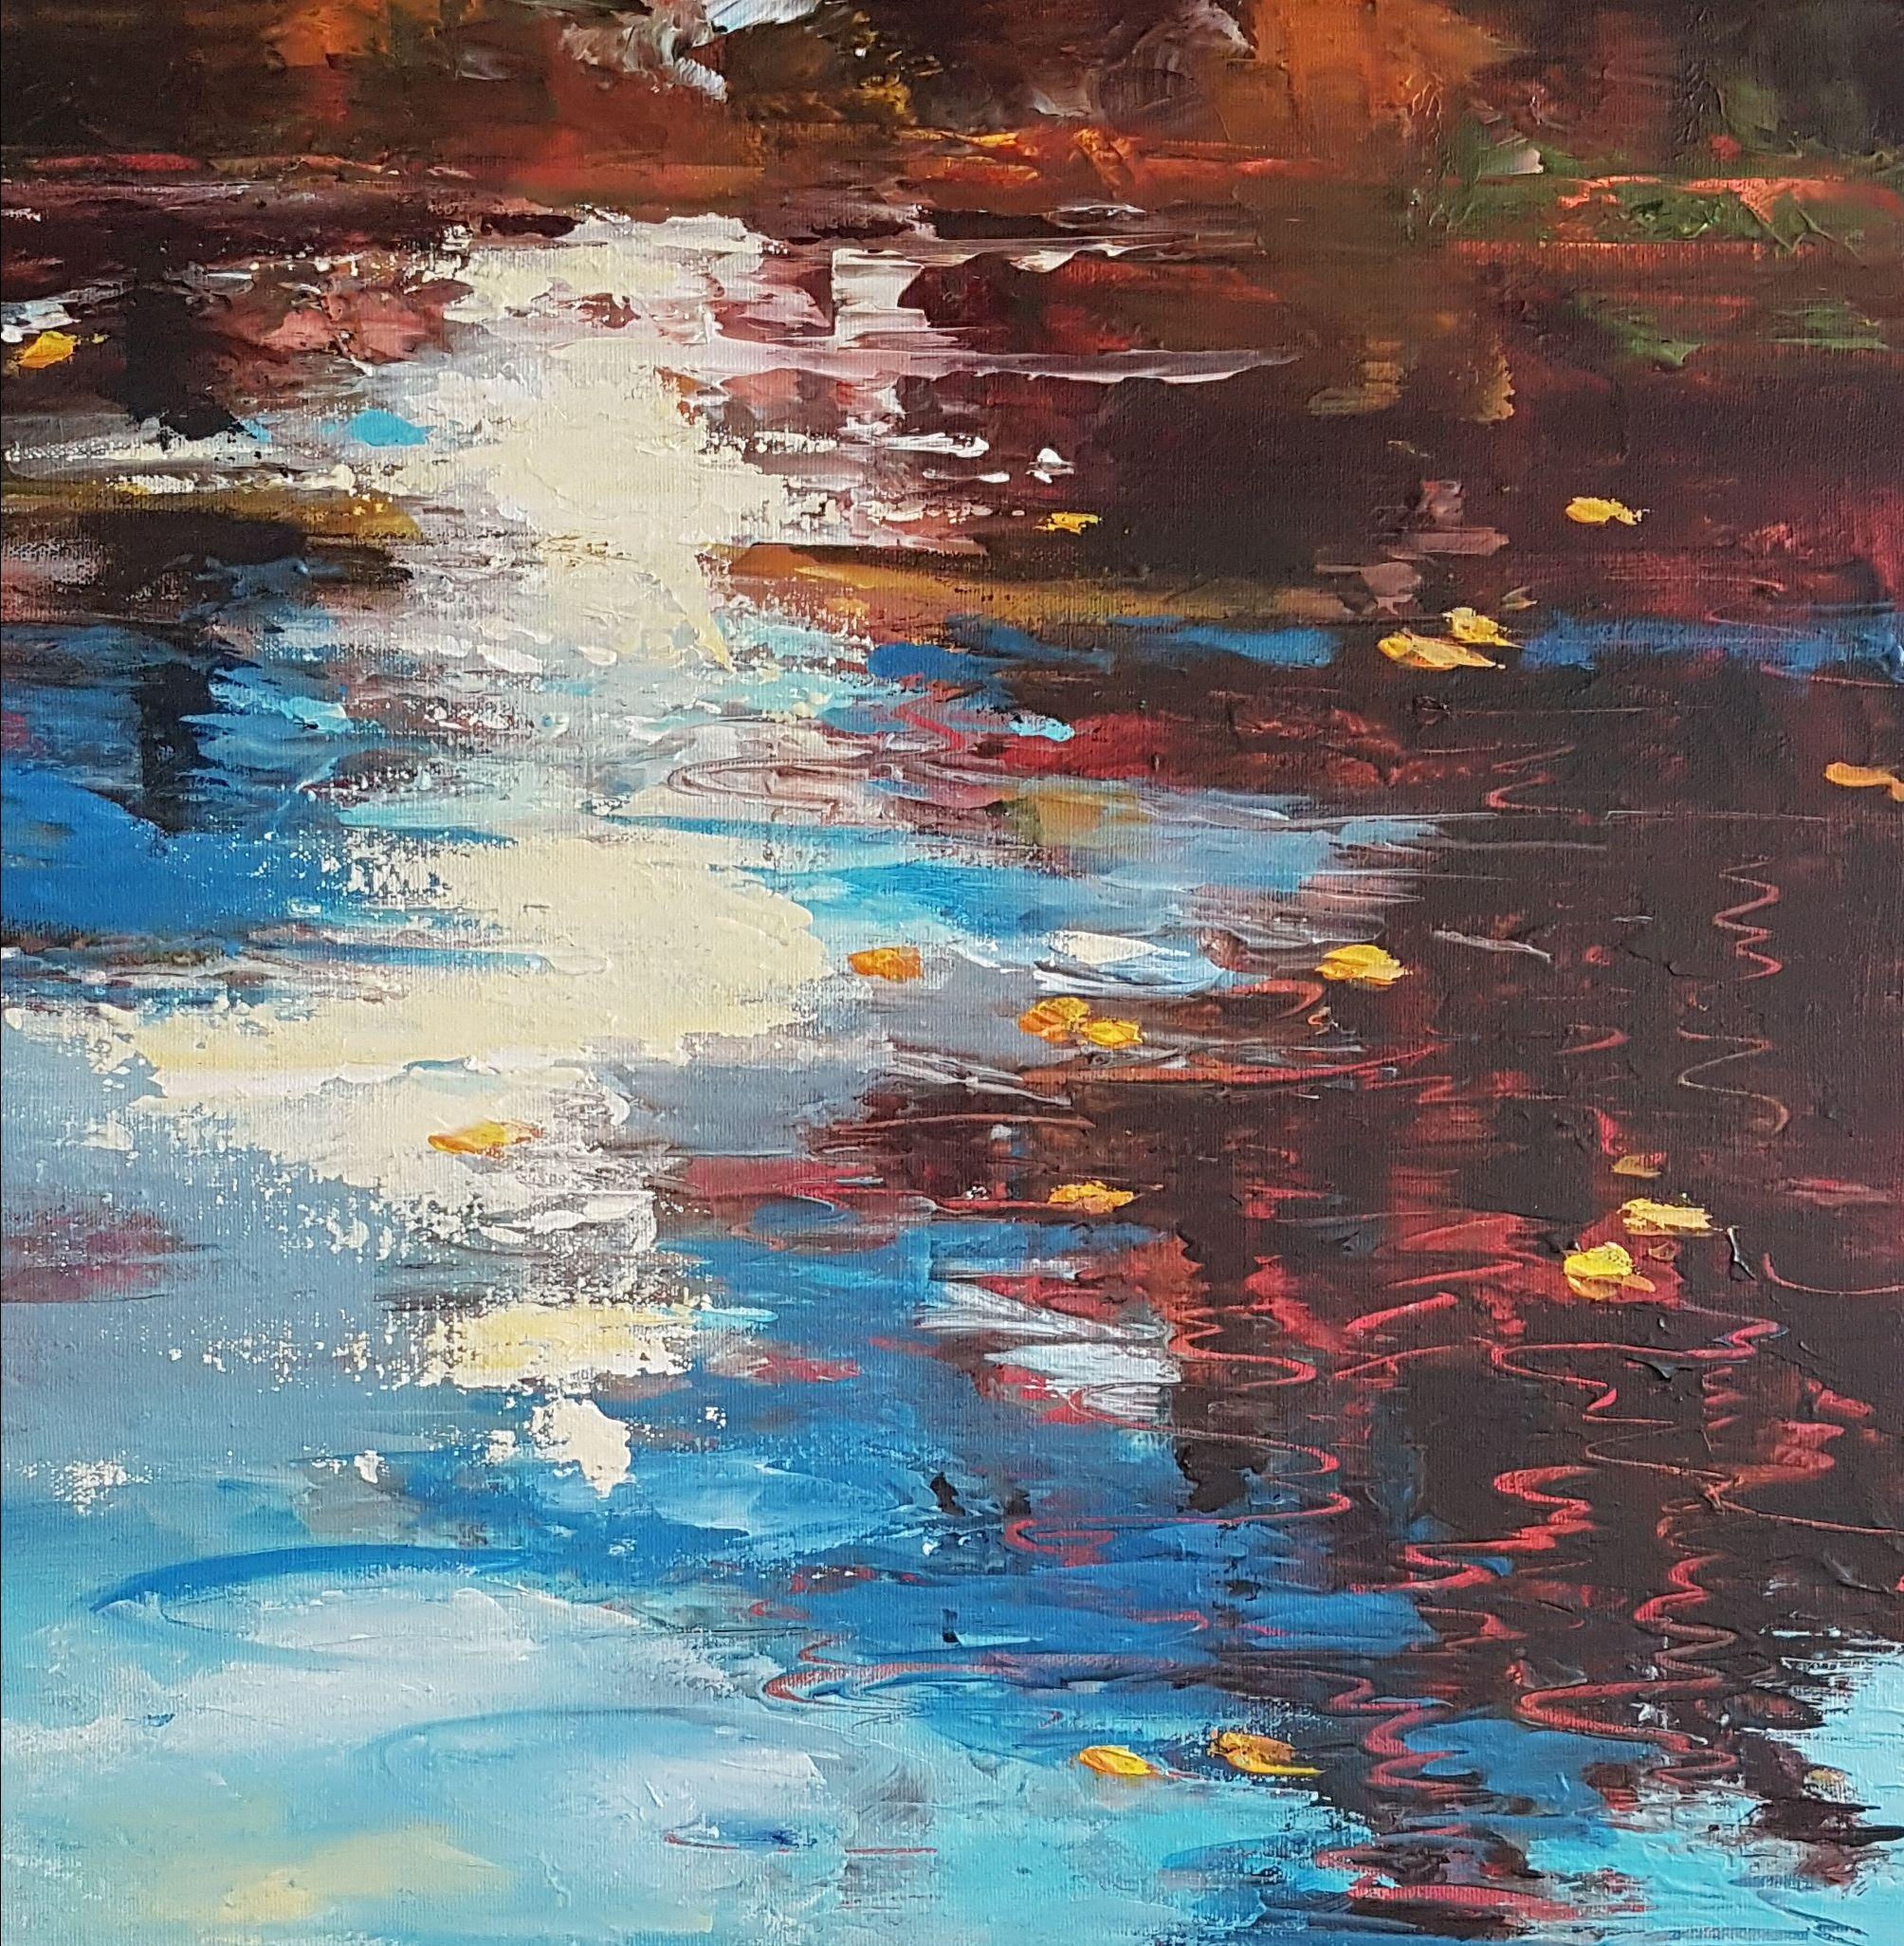 Autumn Pond, Painting, Acrylic on Canvas